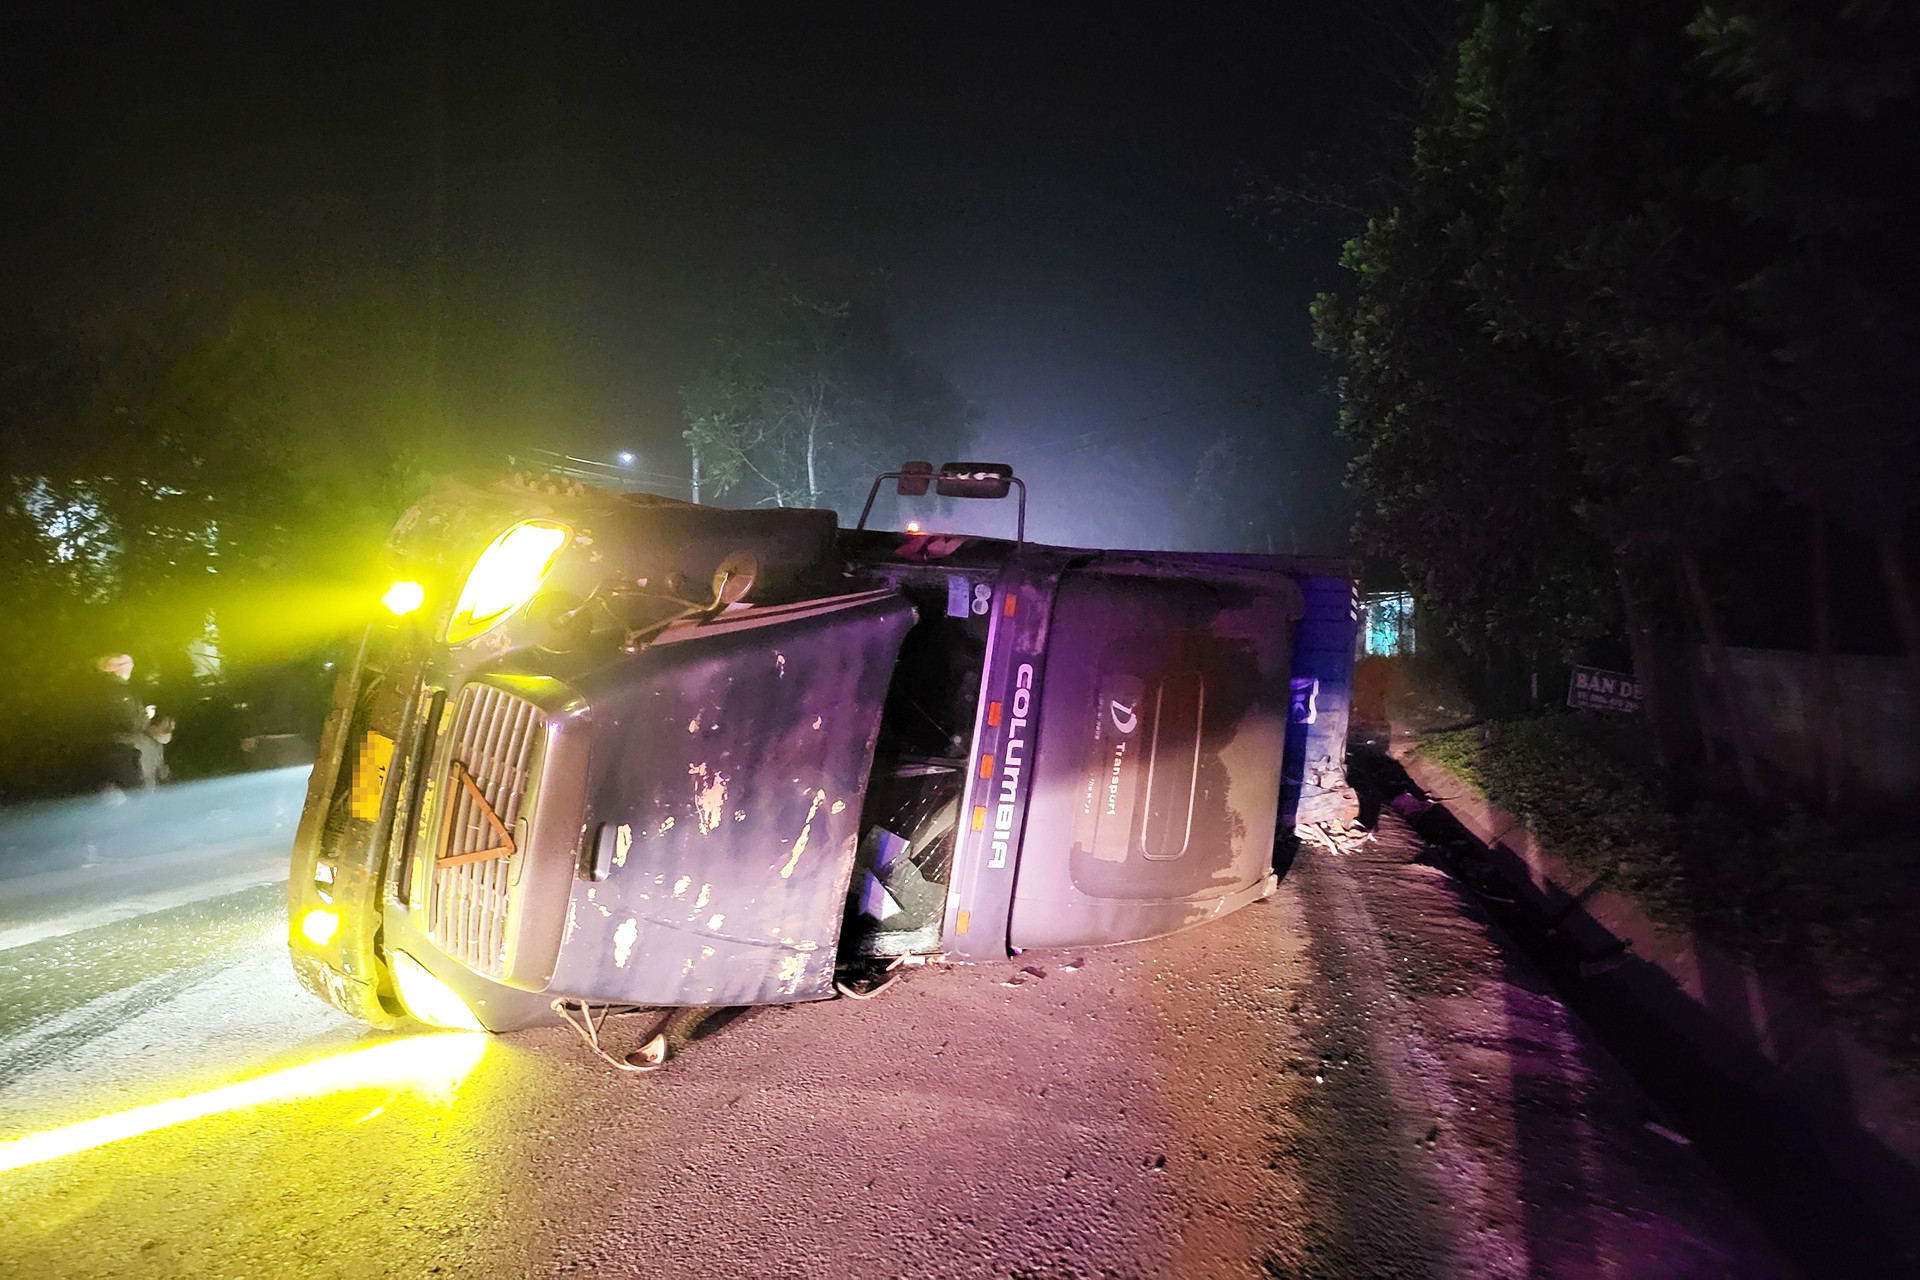 Nguyên nhân vụ tai nạn xe khách khiến 5 người tử vong tại chỗ